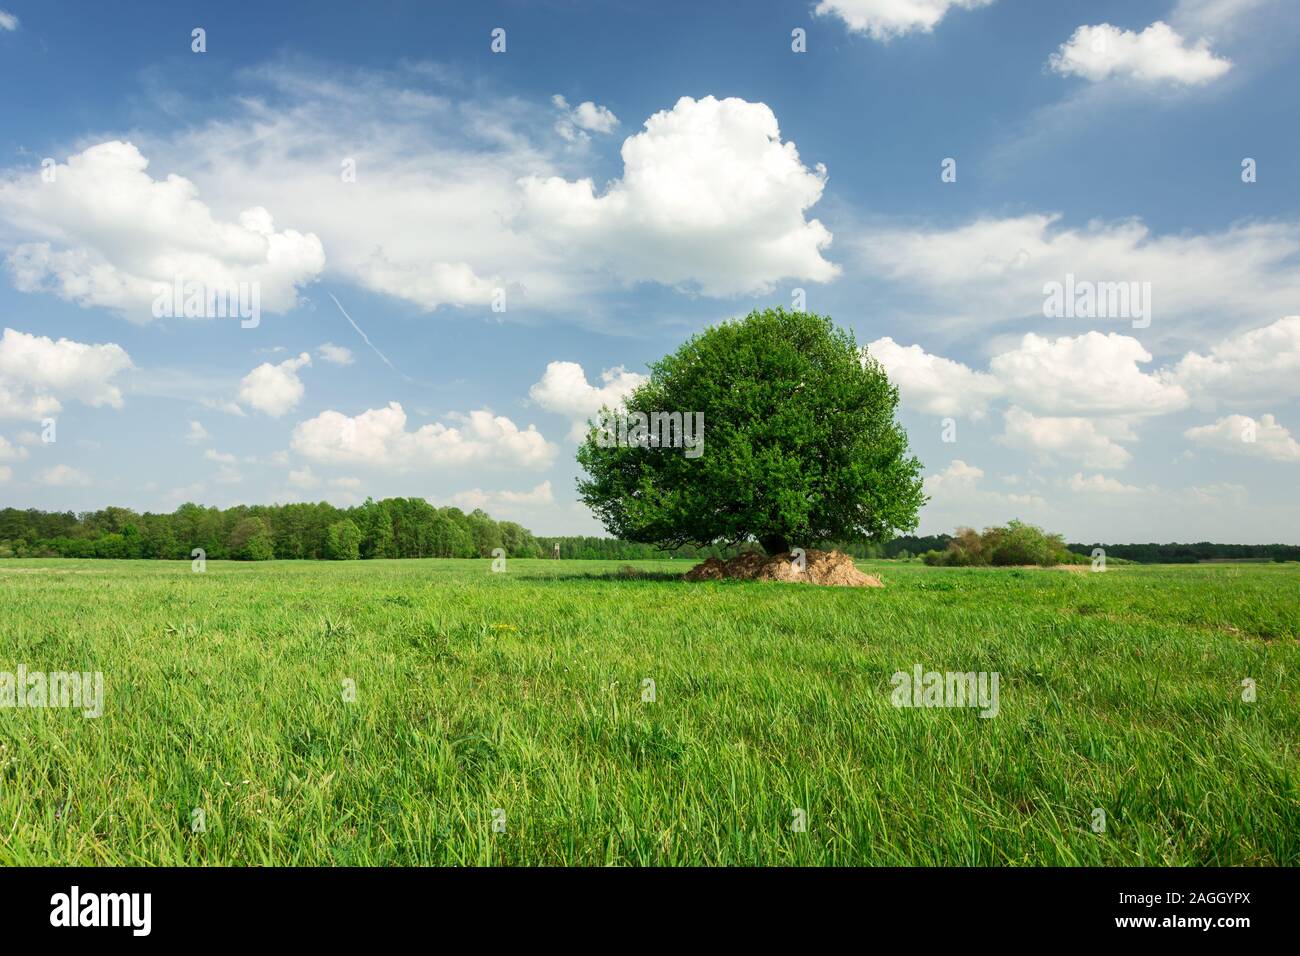 Einzigen Baum auf der grünen Wiese, Wald am Horizont und die weißen Wolken am blauen Himmel - Blick auf Frühling Stockfoto